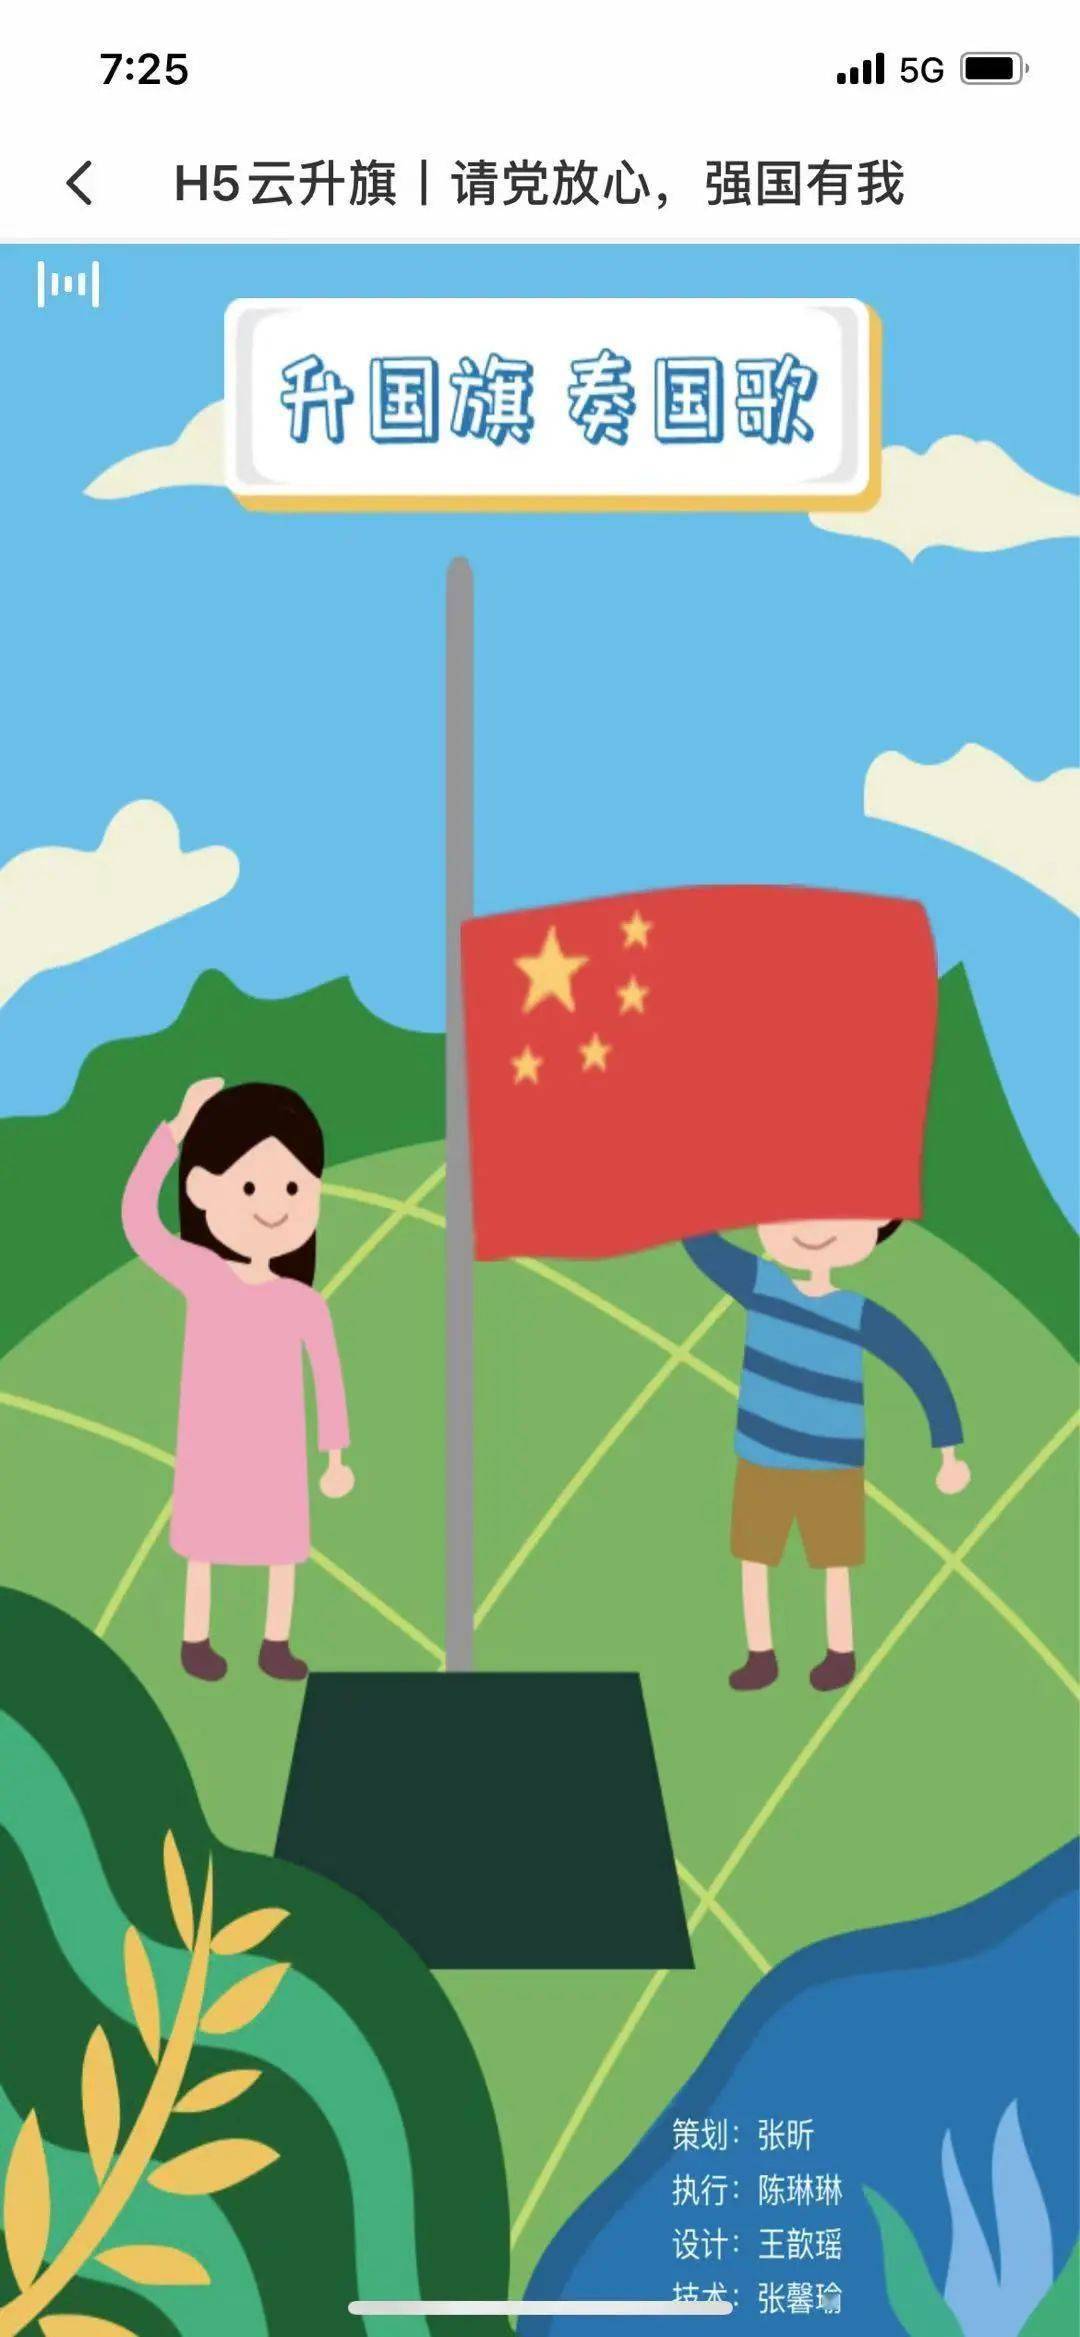 迎风飘扬的国旗 动画图片